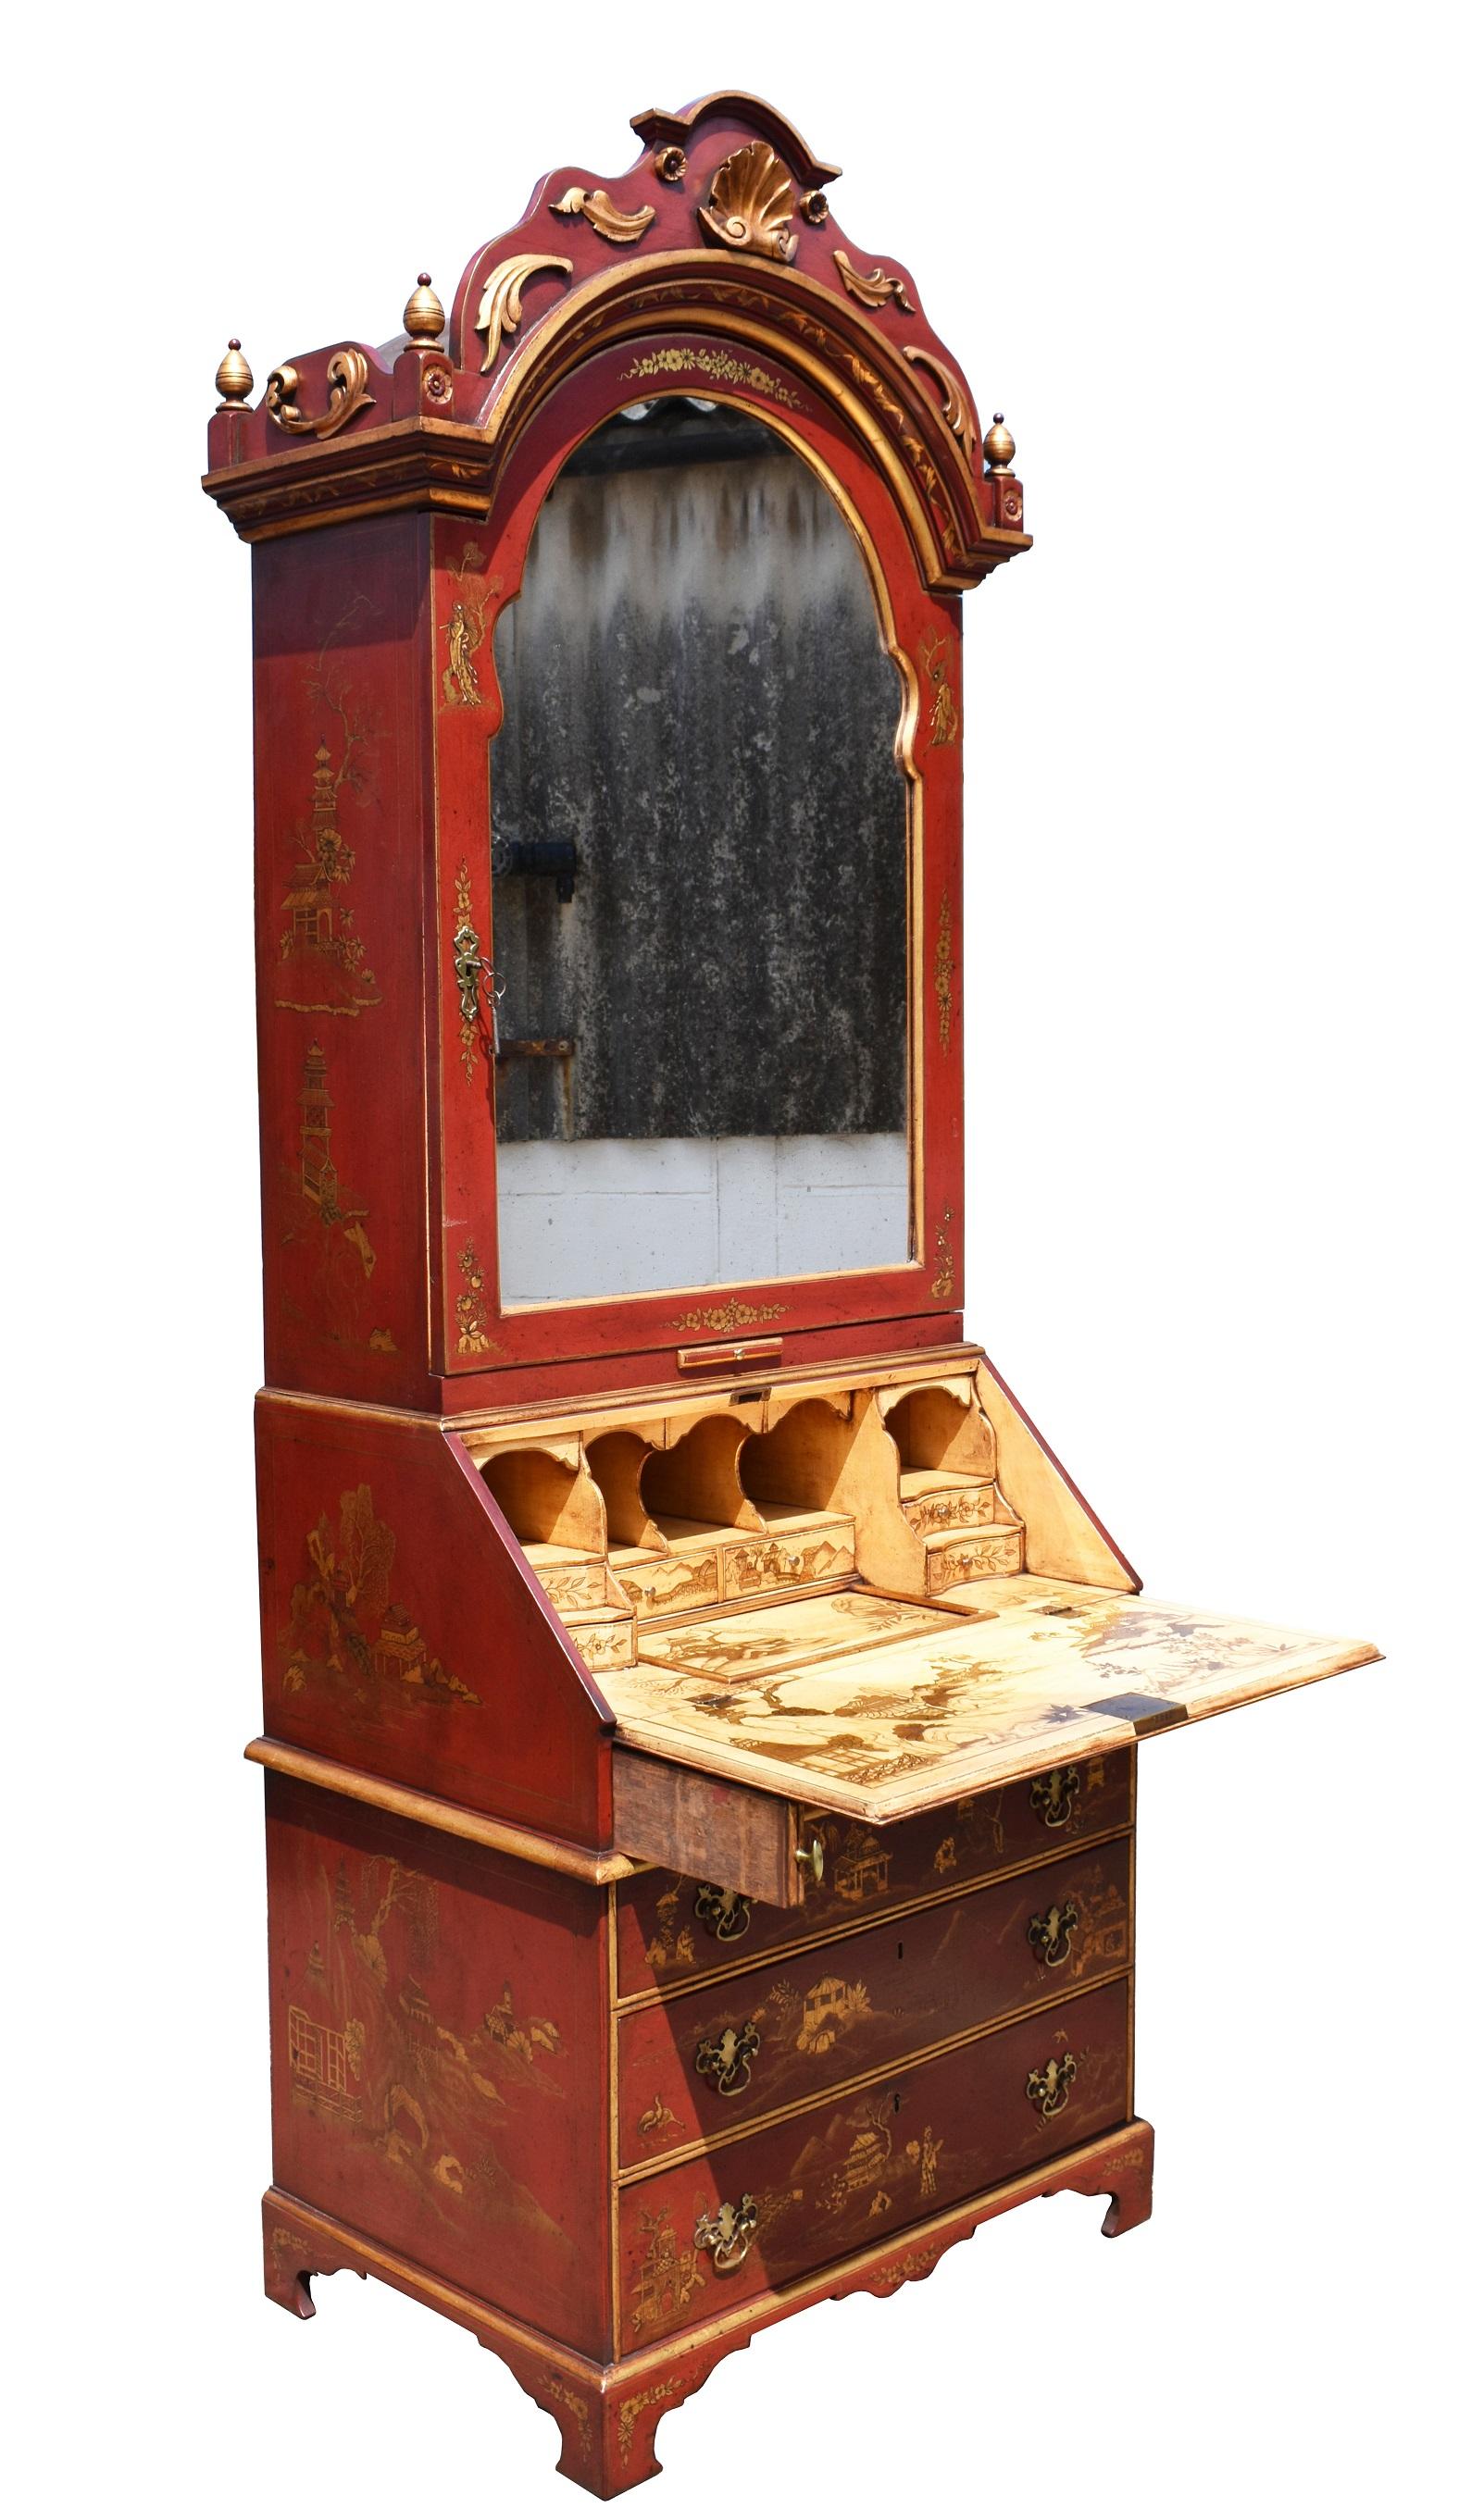 Zum Verkauf steht ein hochwertiges Sekretär-Bücherregal im Chinoiserie-Stil aus dem 18. Der obere Teil des Bücherschranks hat einen kunstvoll geformten und geschnitzten Giebel über einer einzelnen gewölbten Spiegeltür, die sich öffnen lässt, um